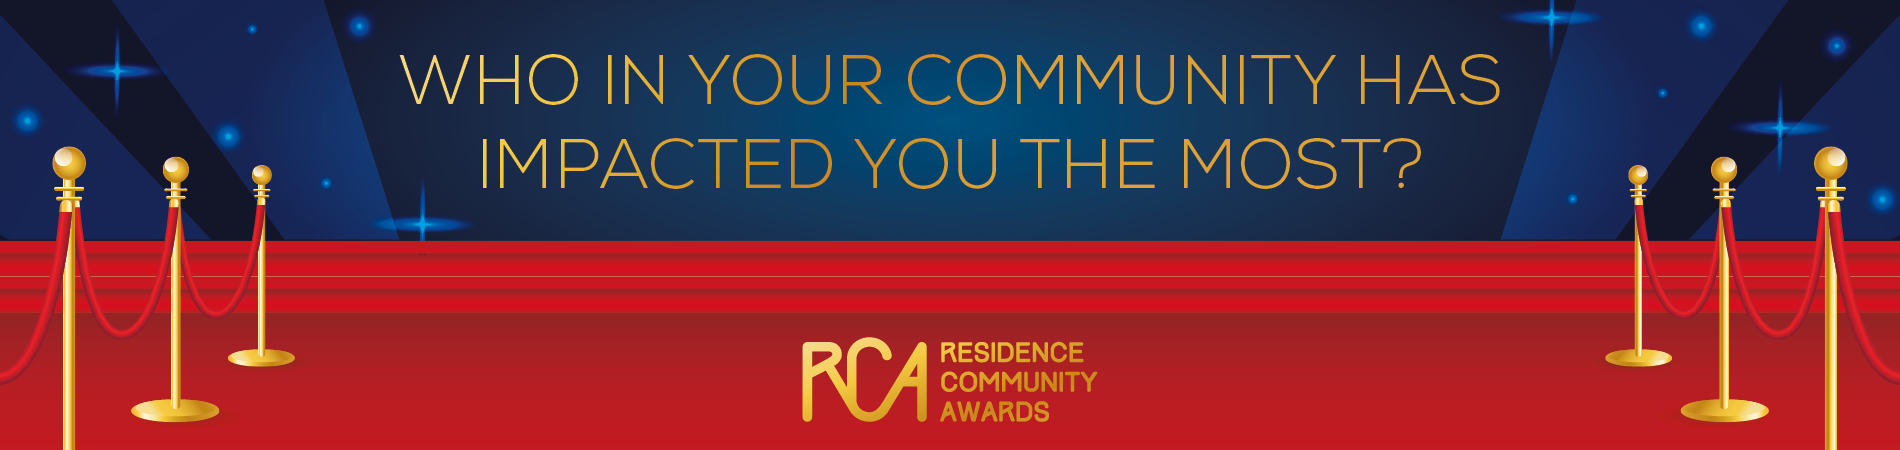 ualberta-residence-community-awards-banner-2021.jpg